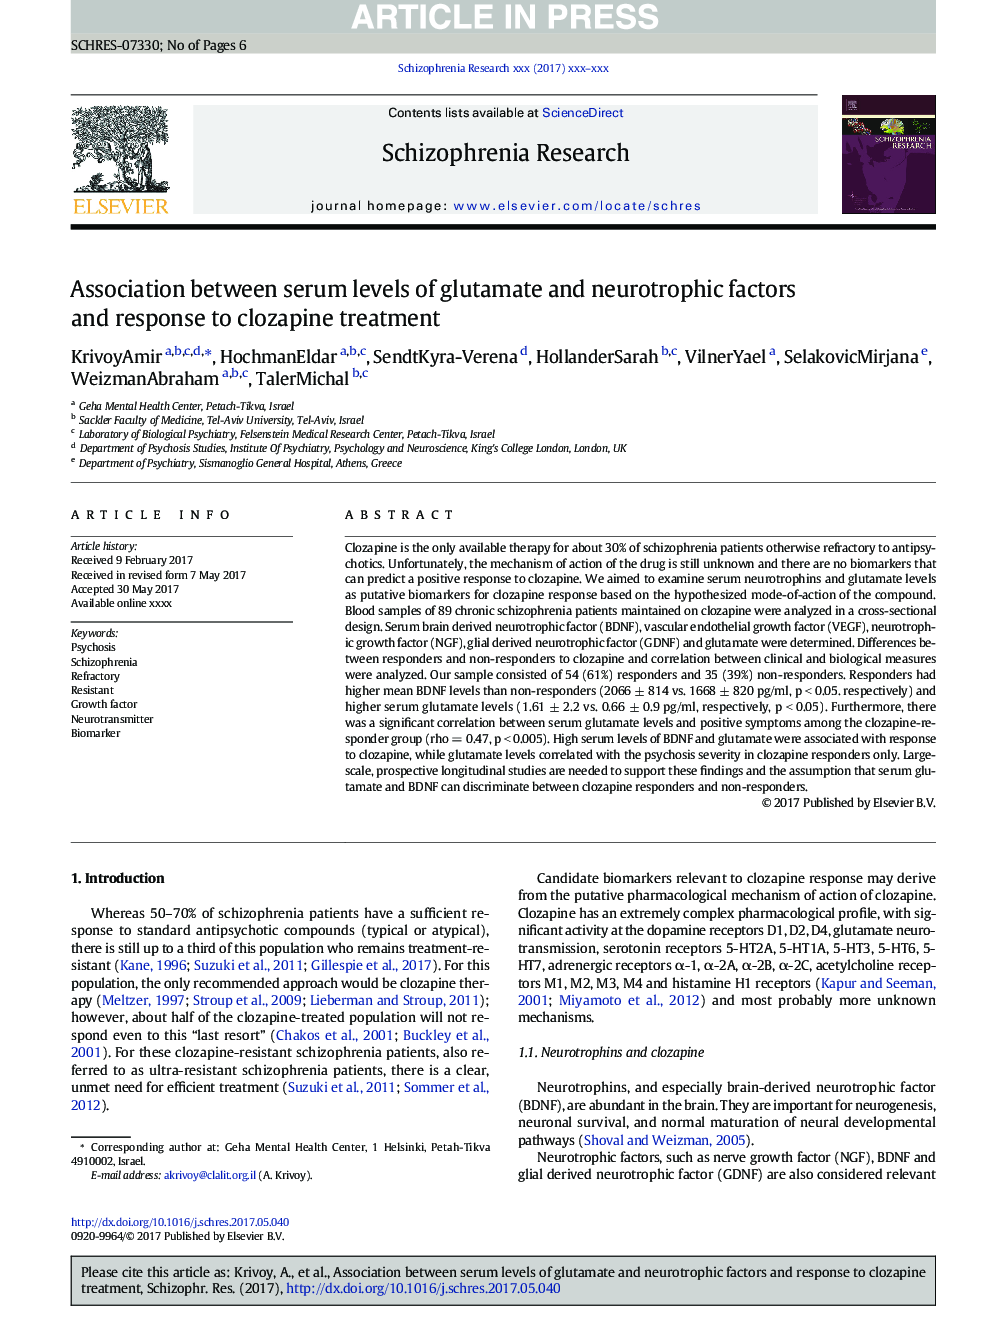 ارتباط سطح سرمی گلوتامات و عوامل نوروئیدی و پاسخ به درمان کلوزاپین 